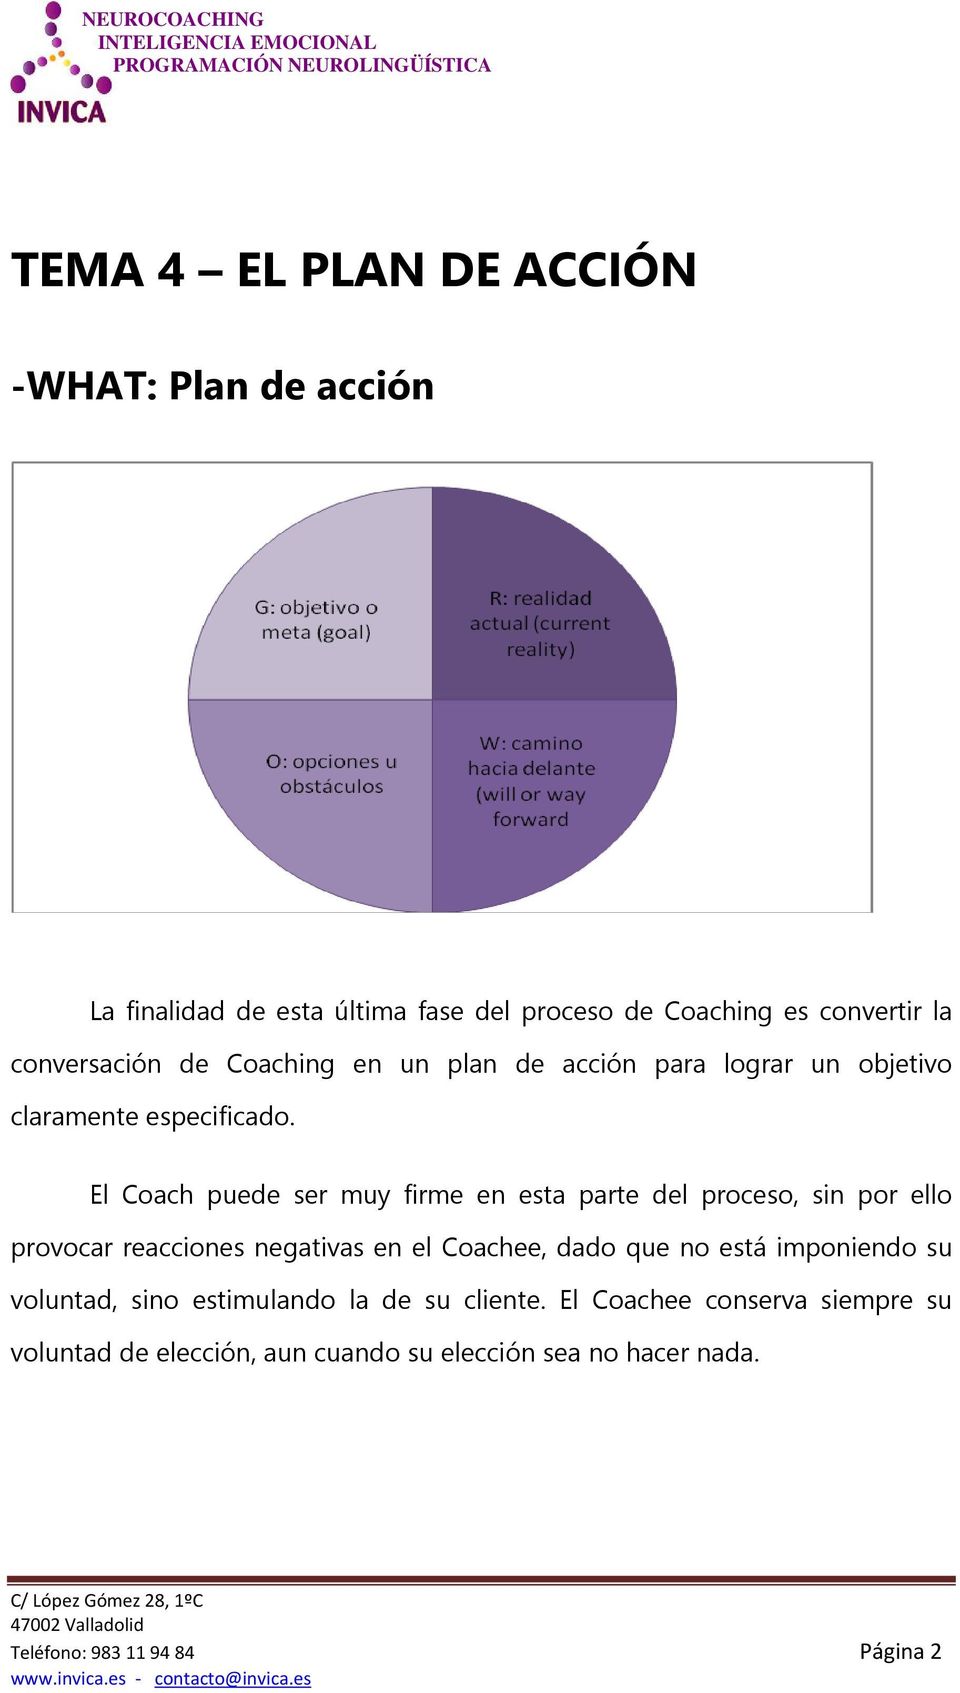 El Coach puede ser muy firme en esta parte del proceso, sin por ello provocar reacciones negativas en el Coachee, dado que no está